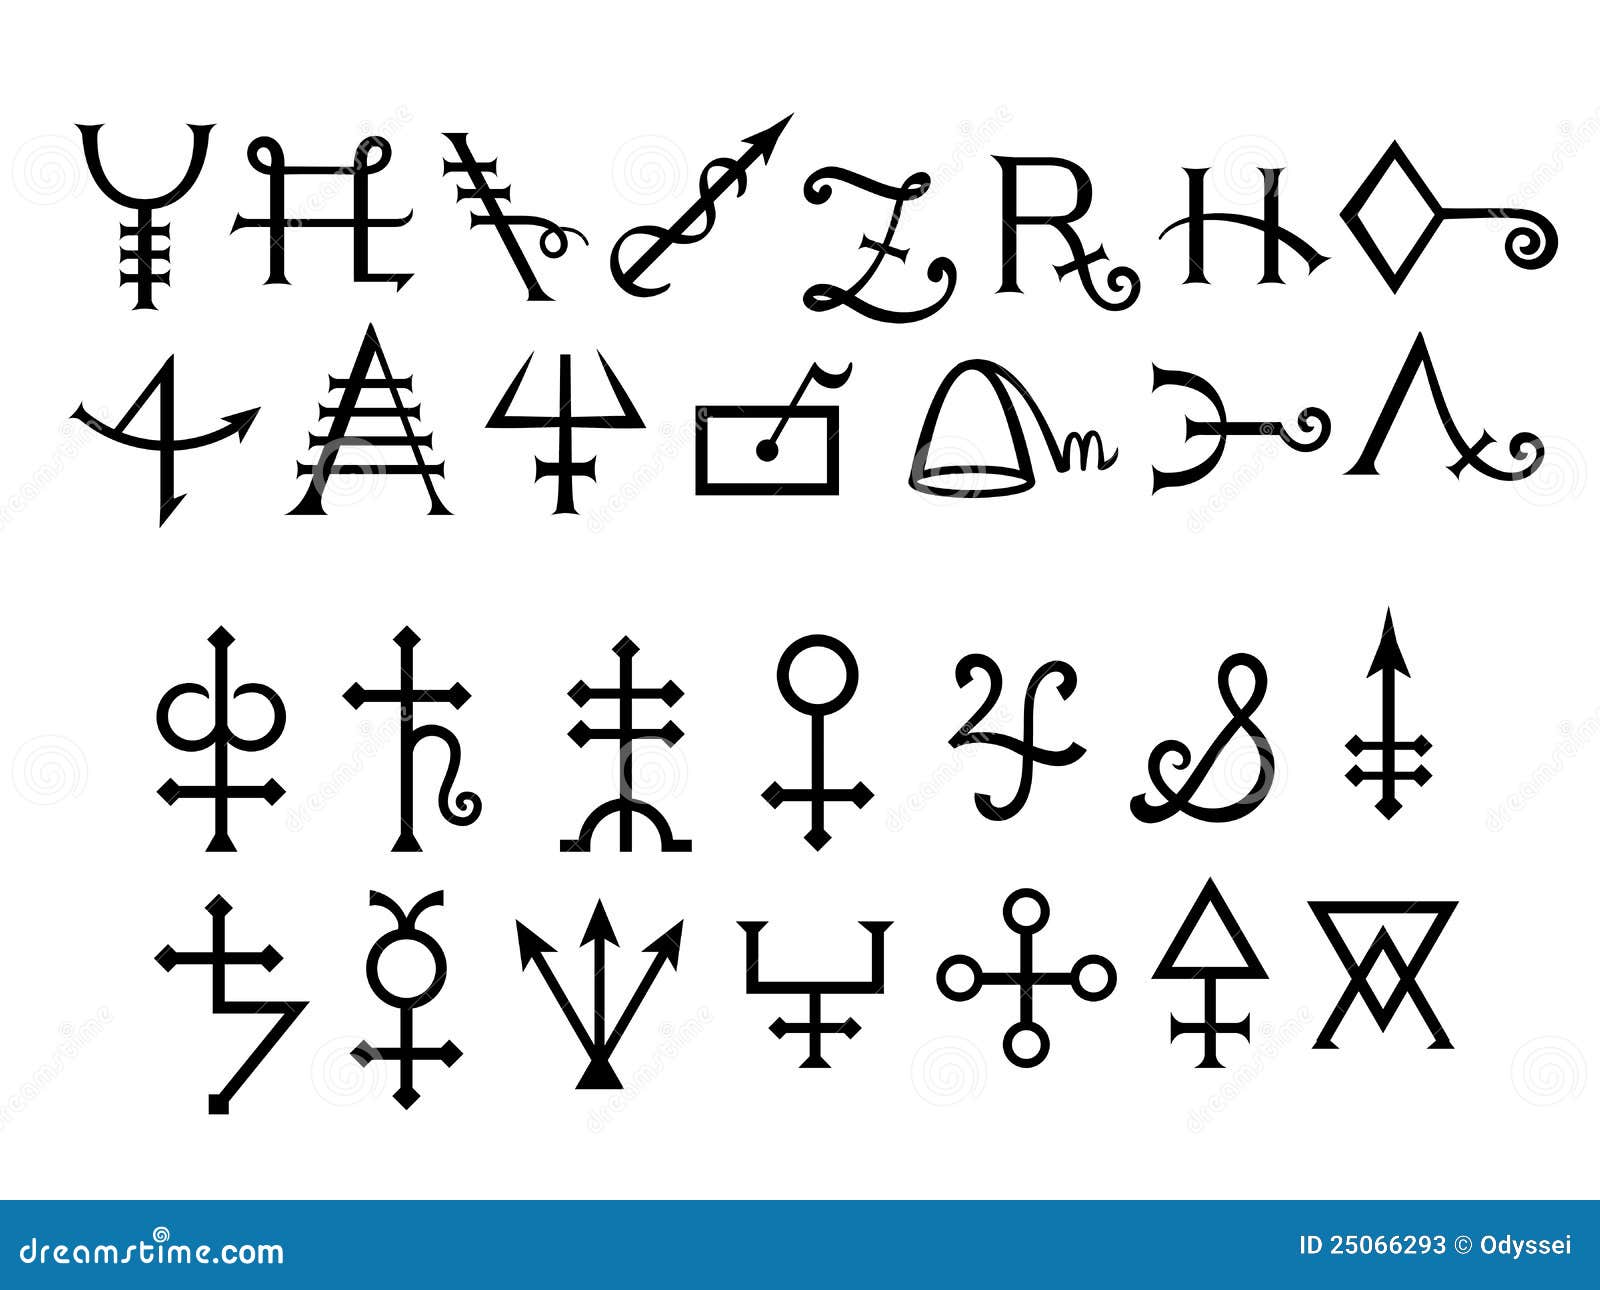 Люди ставшие символами. Алхимические символы средневековья. Мистические символы. Загадочные знаки. Магические алхимические знаки.